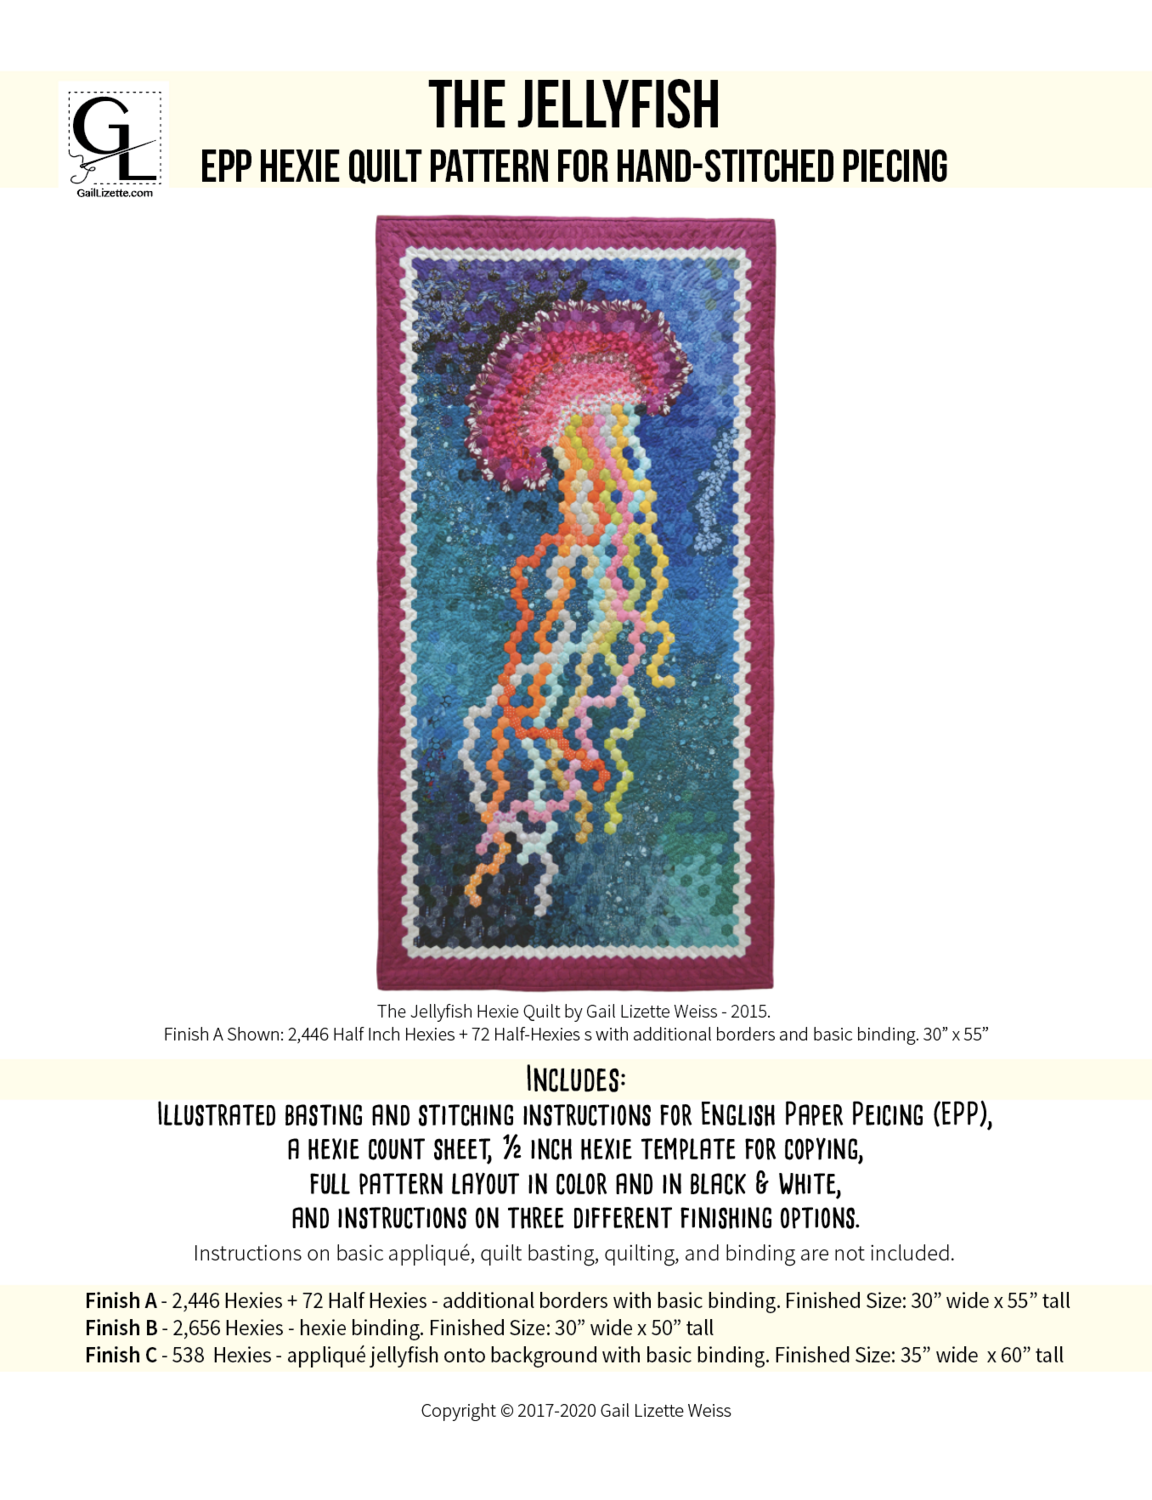 Jellyfish Hexie EPP Quilt Pattern - PDF Download